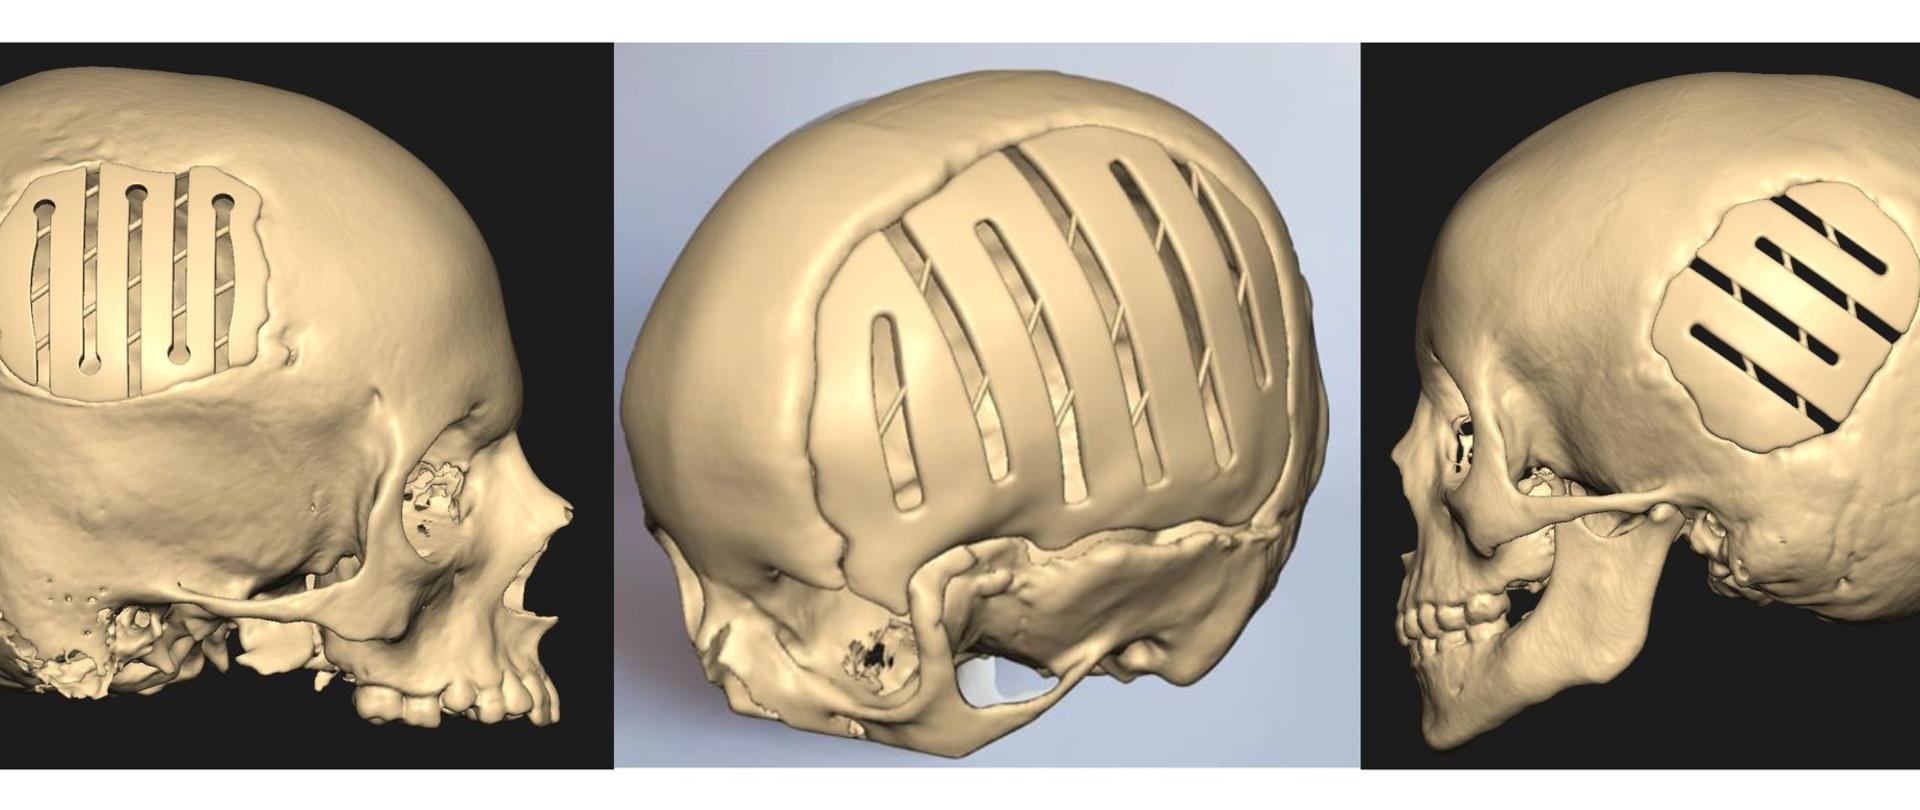 Nasz patent - adaptacyjny implant czaszki dla najm┼éodszych pacjento╠üw